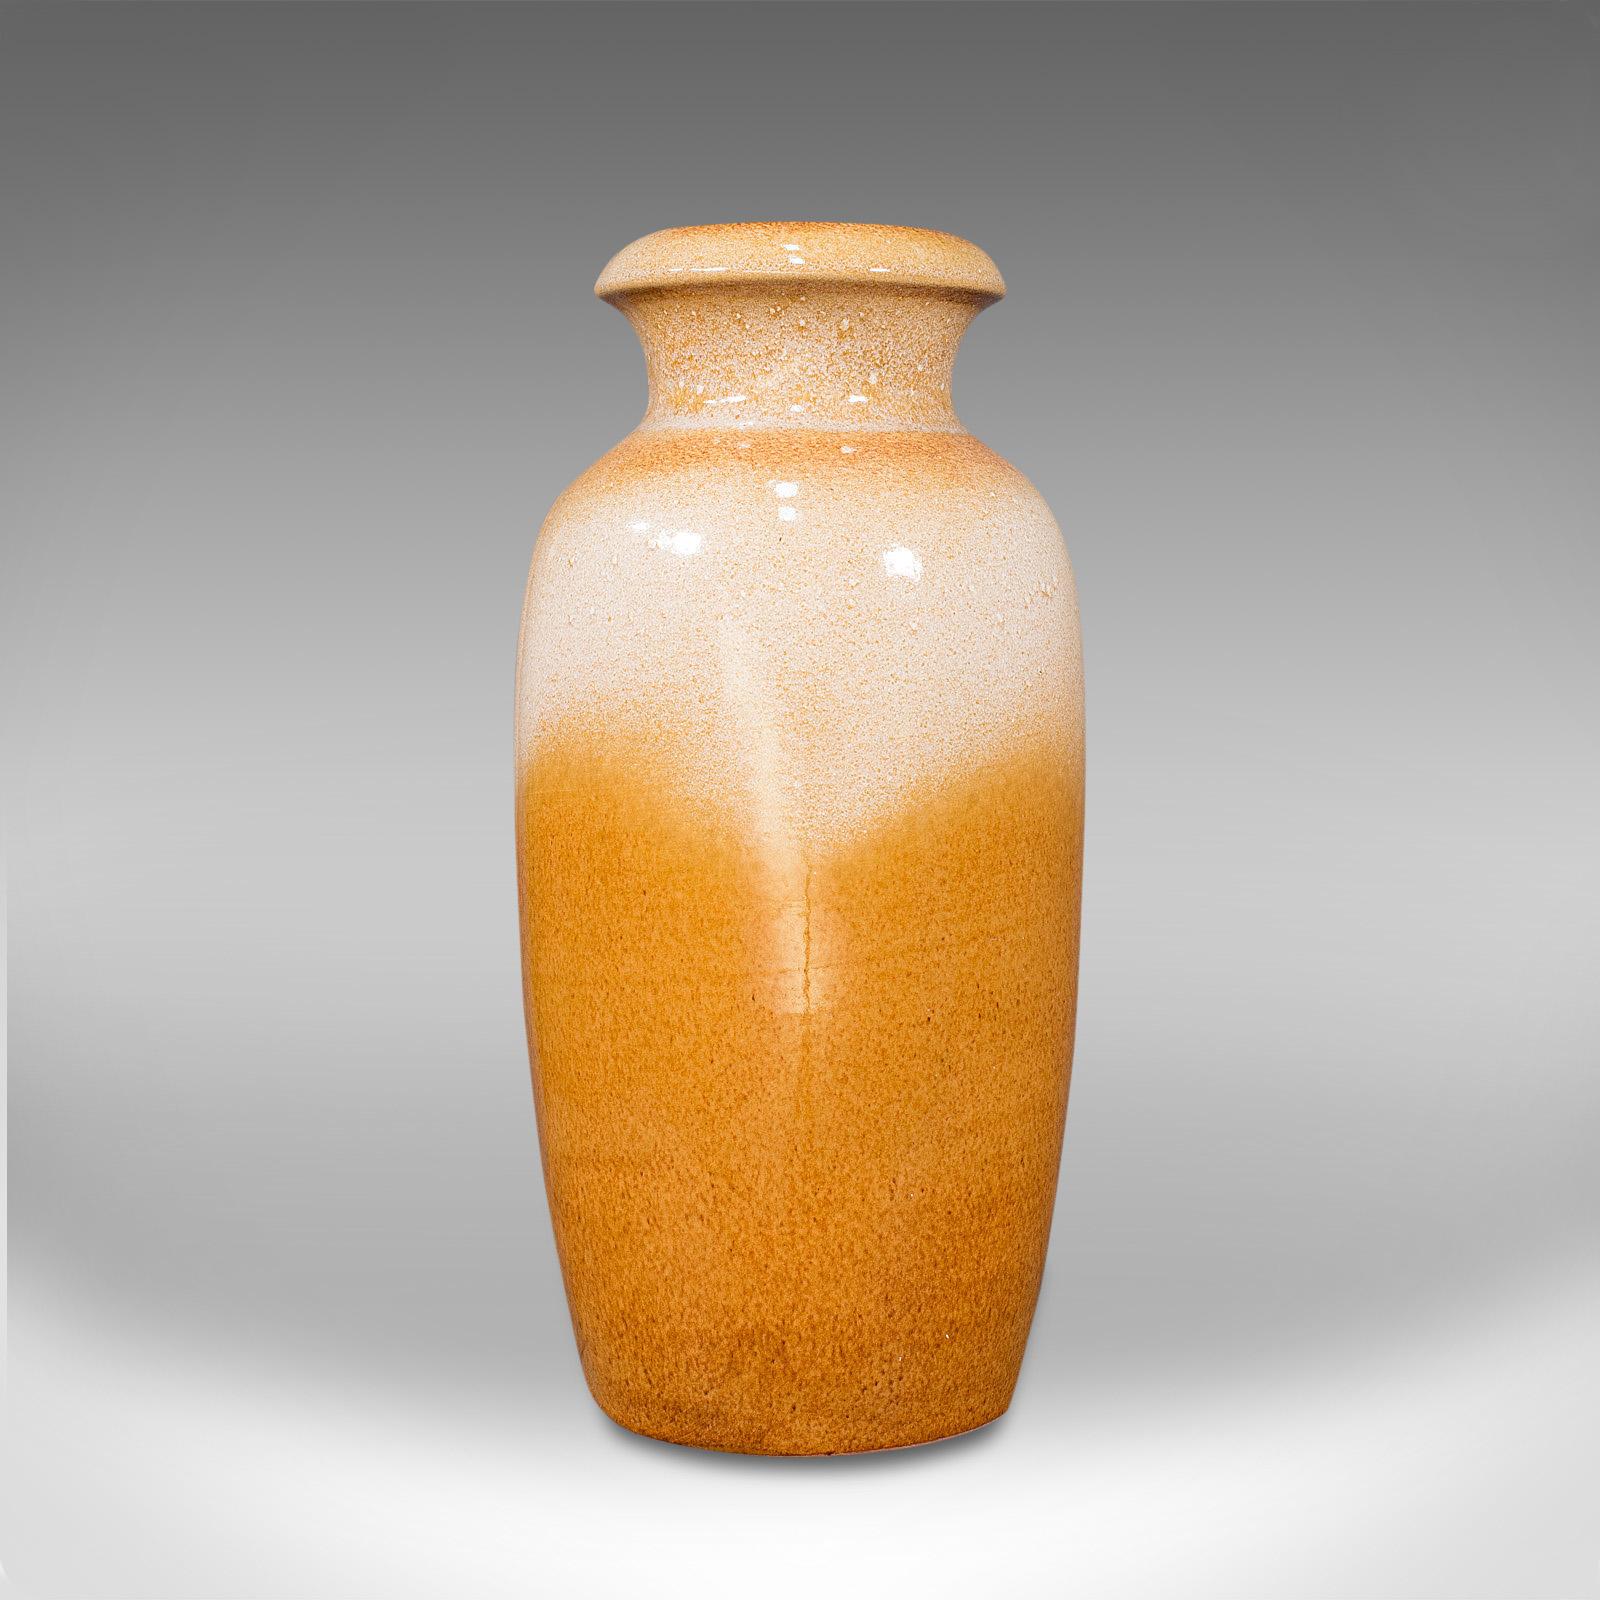 Il s'agit d'un vase décoratif vintage. Vase à fleurs allemand en céramique peint à la lave, datant du milieu du 20e siècle, vers 1960.

Des teintes douces et un goût caractéristique du milieu du siècle
Présente une patine vieillie très